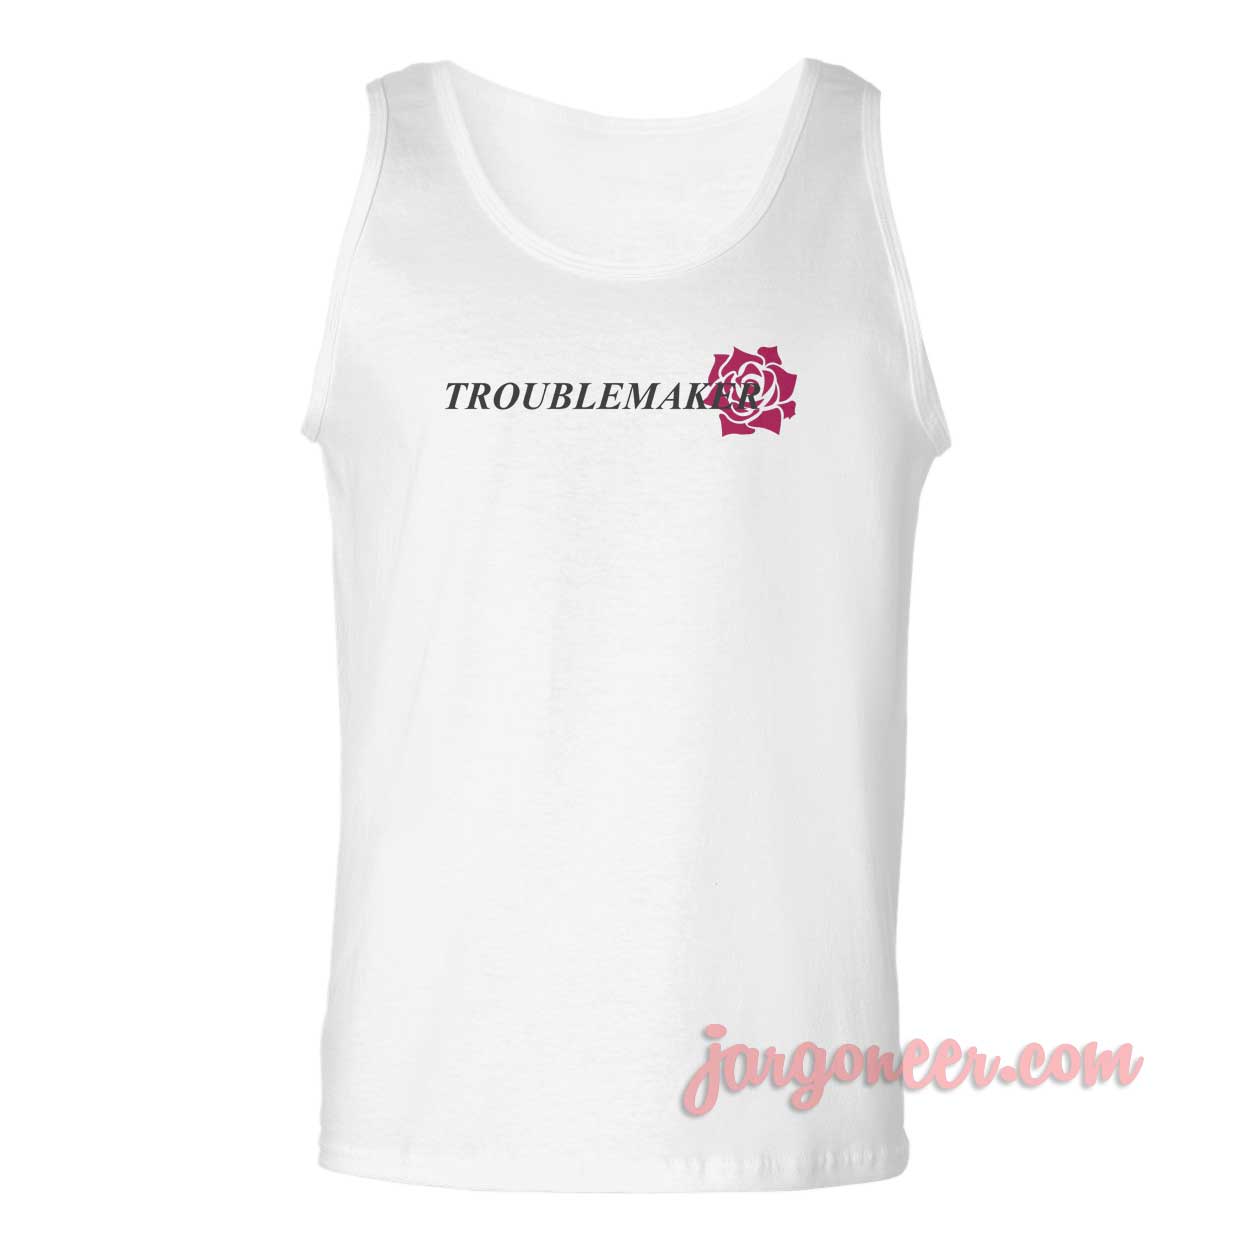 Troublemaker - Shop Unique Graphic Cool Shirt Designs